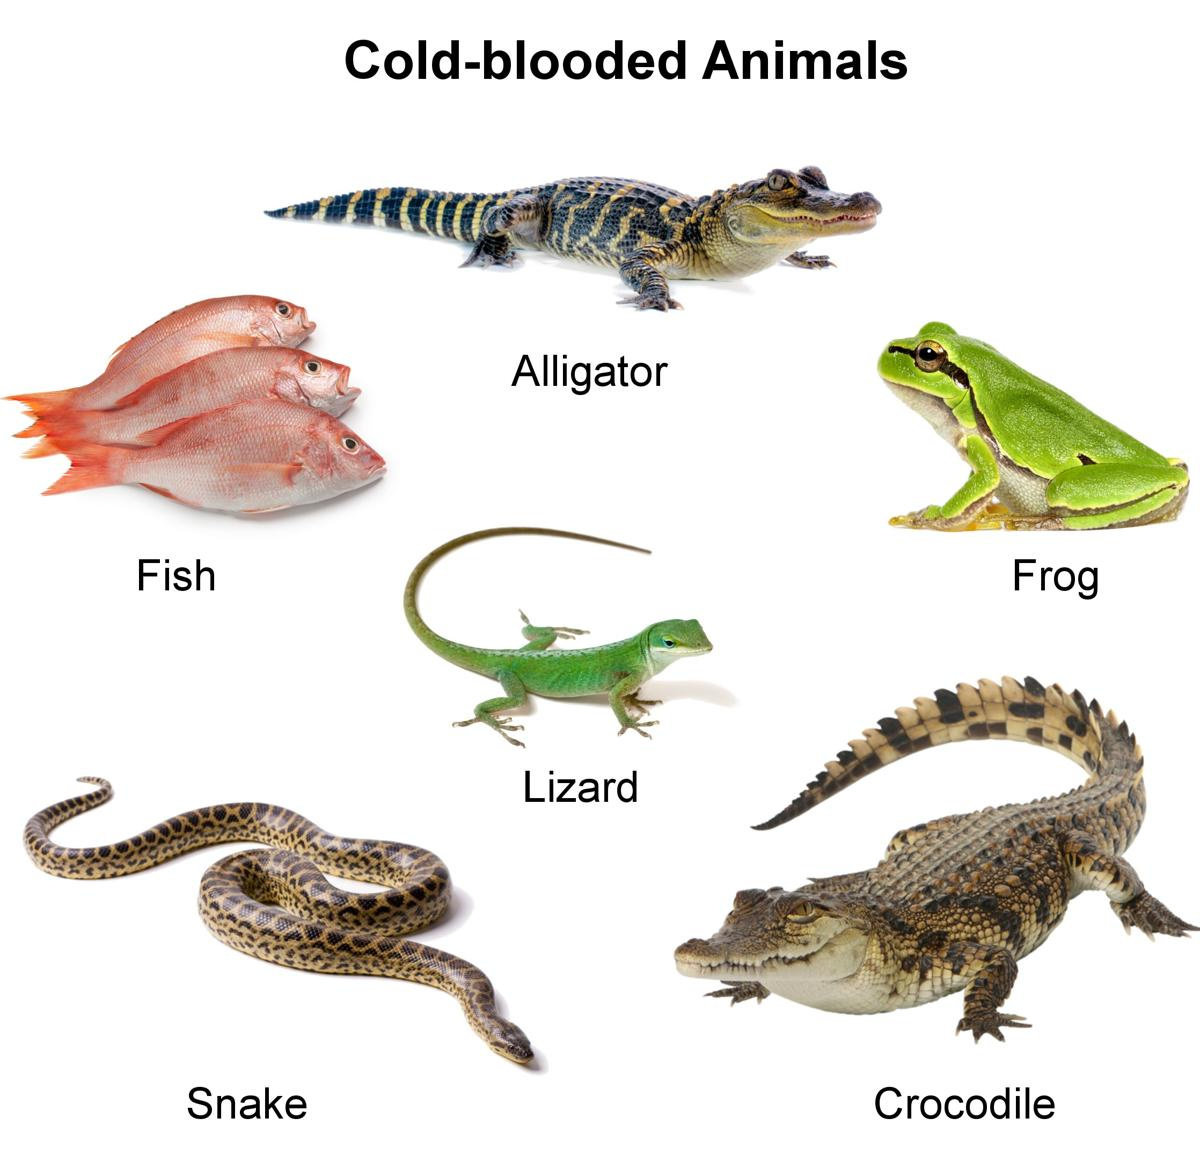 Animales de sangre fría y caliente: diferencias, adaptaciones y supervivencia